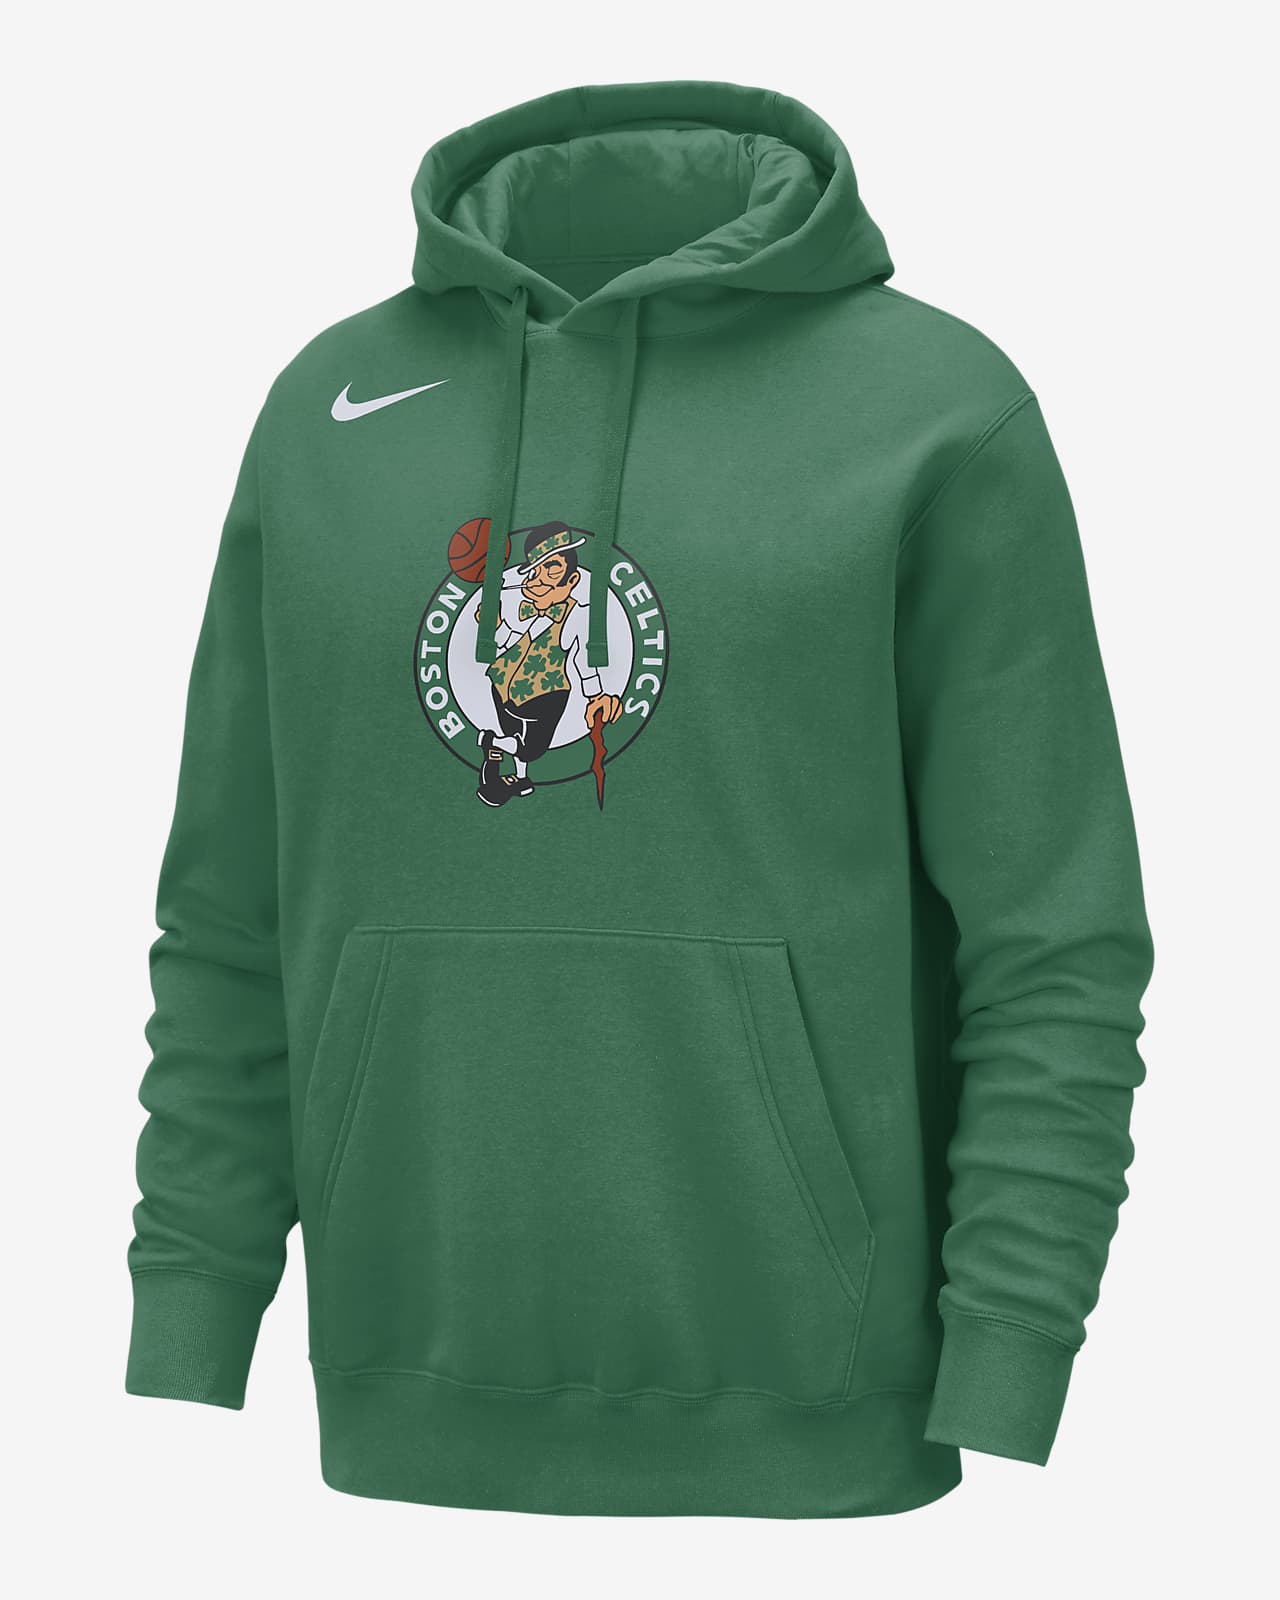 Boston Celtics Club Sudadera con capucha Nike de la NBA - Hombre